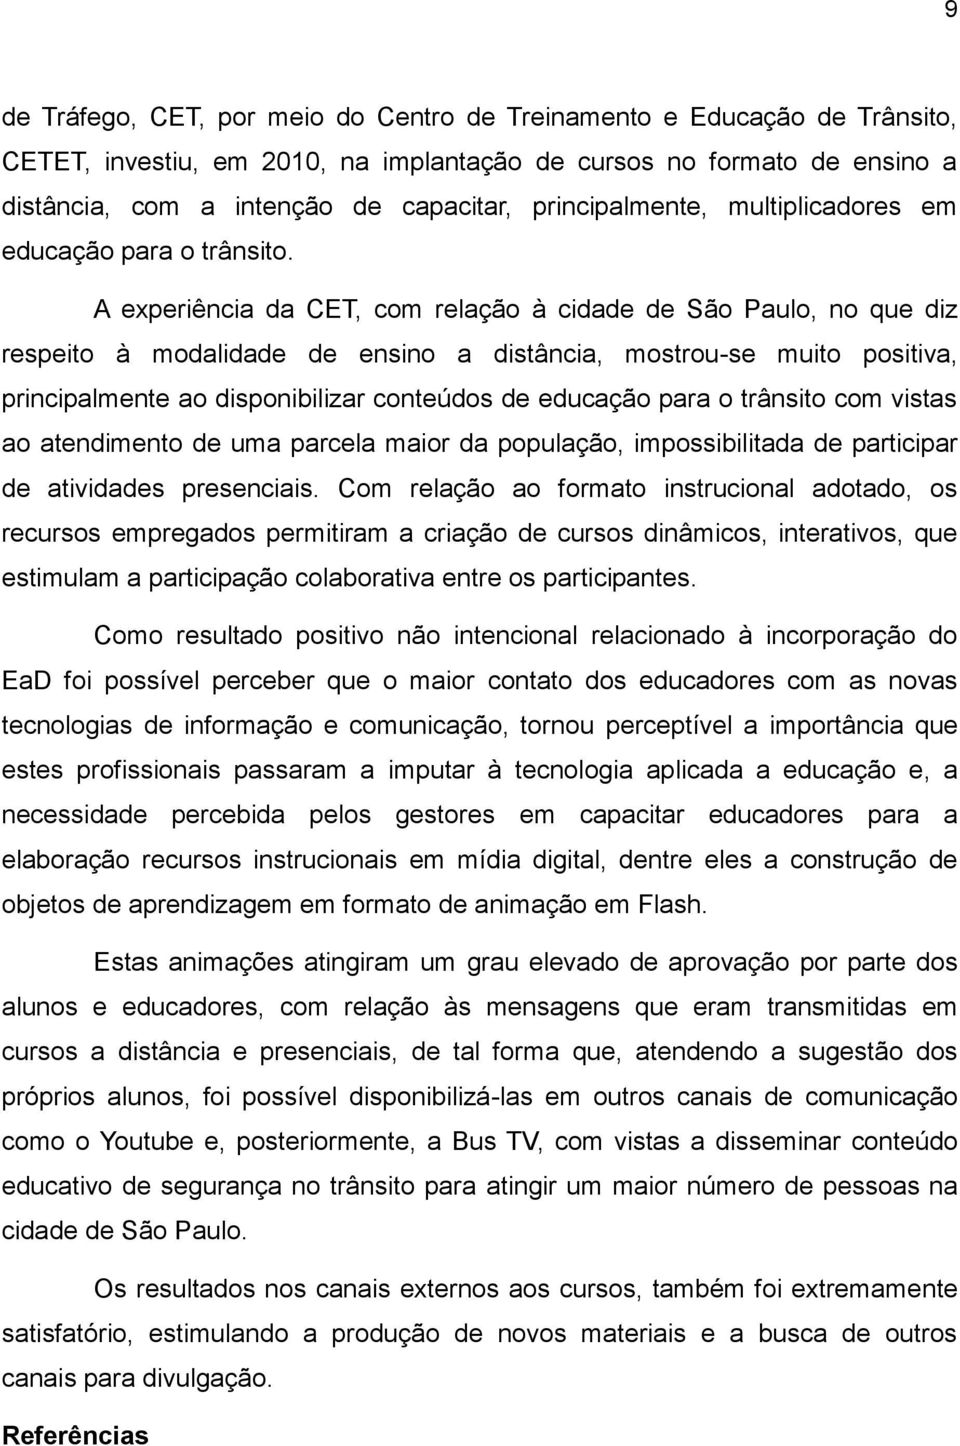 A experiência da CET, com relação à cidade de São Paulo, no que diz respeito à modalidade de ensino a distância, mostrou-se muito positiva, principalmente ao disponibilizar conteúdos de educação para